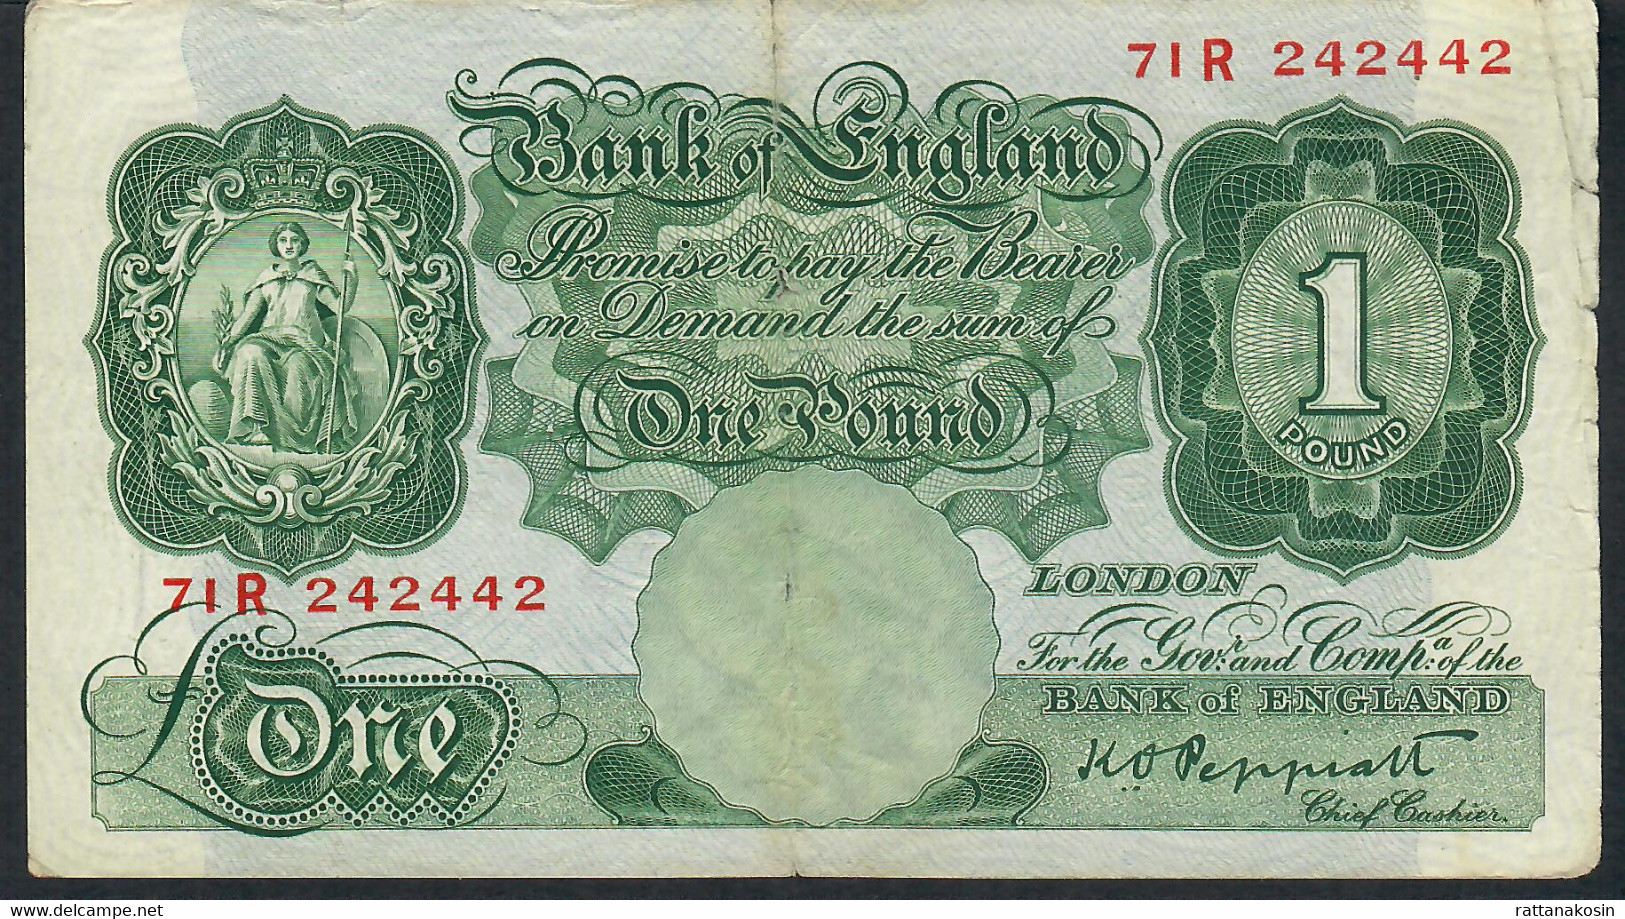 GREAT BRITAIN P369 1 POUND 1948 #71R PEPPIATT  VG - 1 Pound